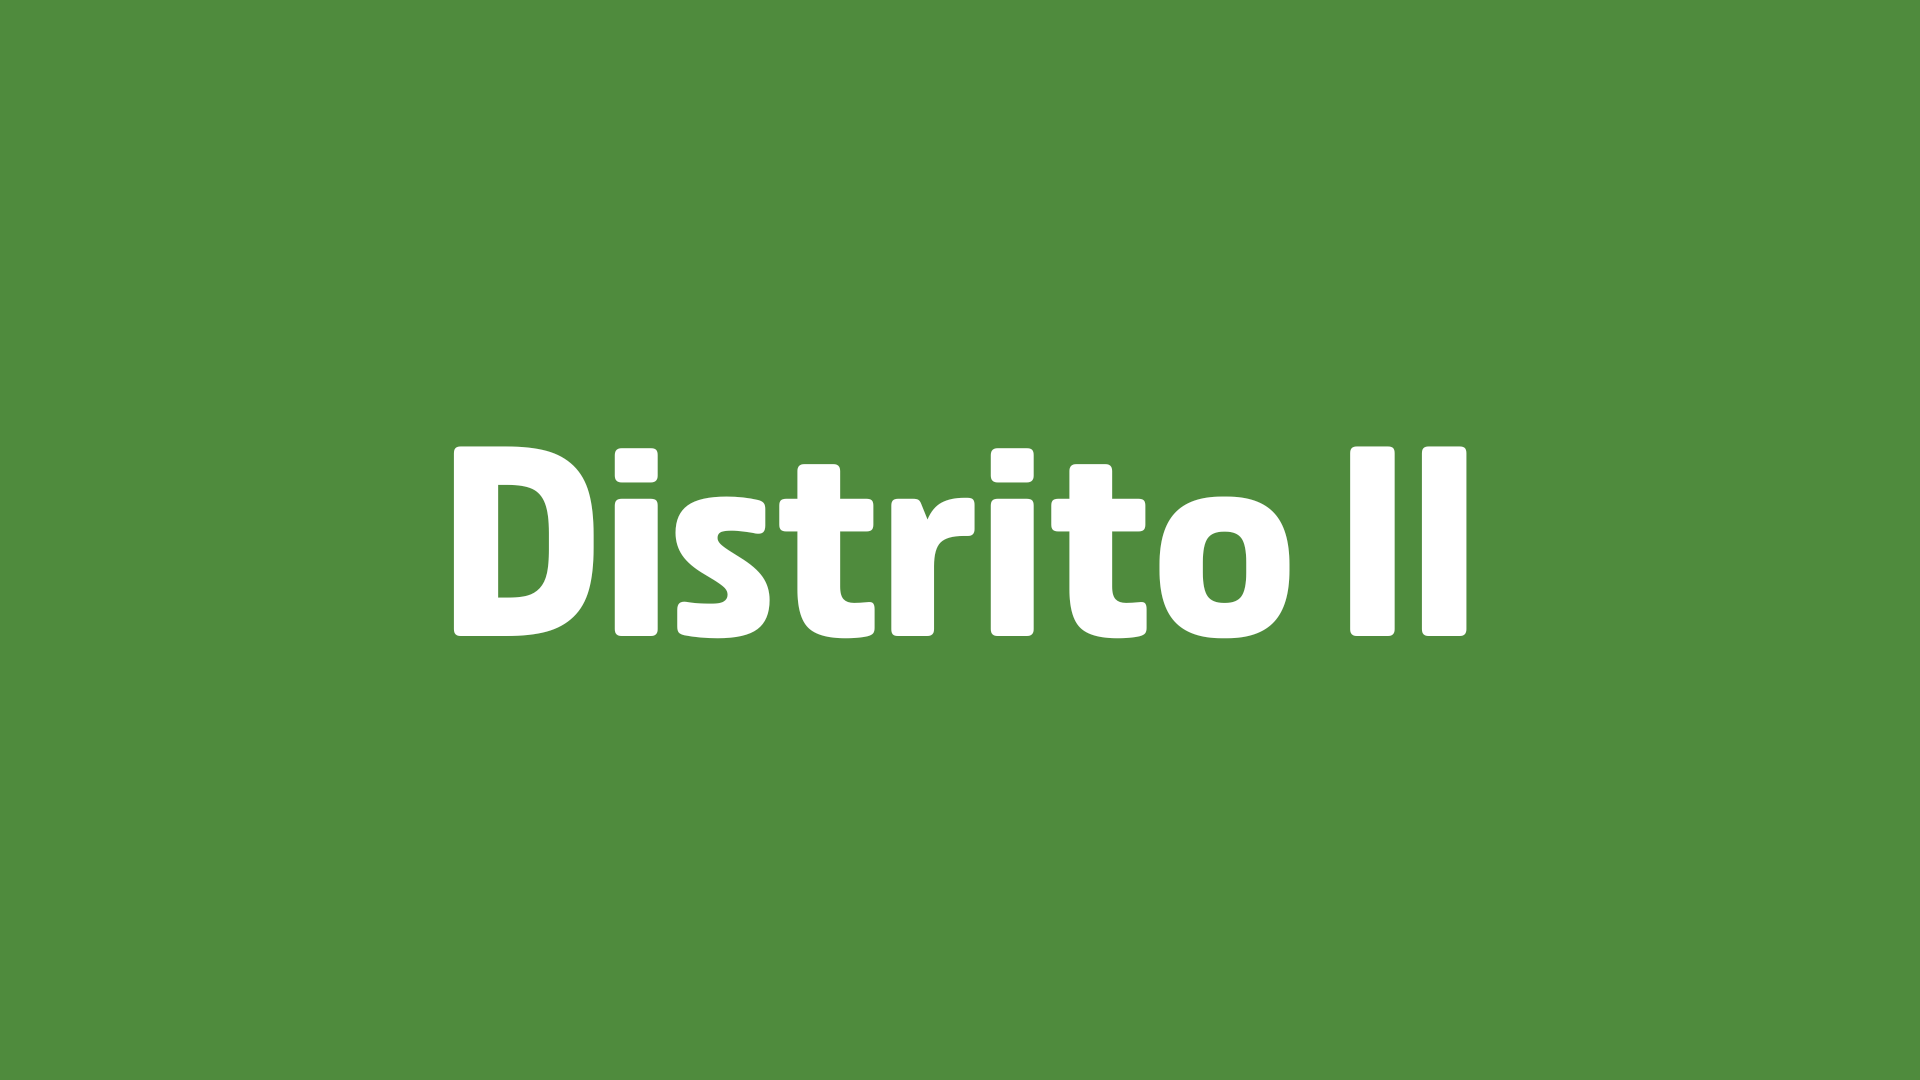 Distrito II